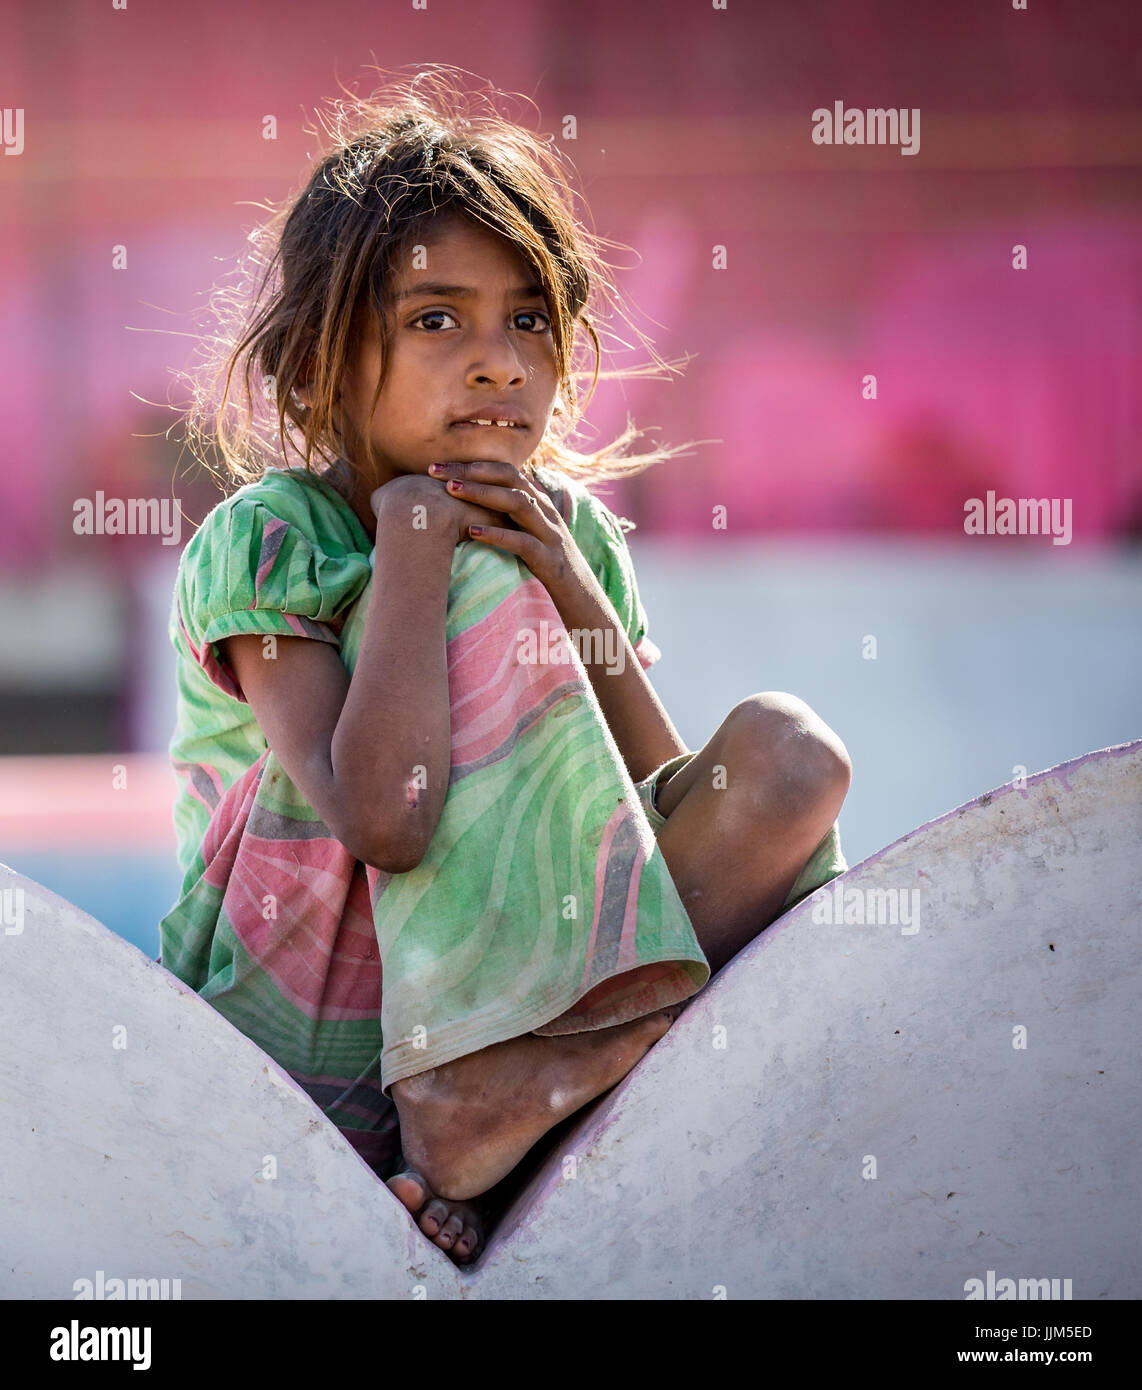 Armes Mädchen sitzt auf einer Mauer, Porträt, Pushkar, Rajasthan, Indien Stockfoto